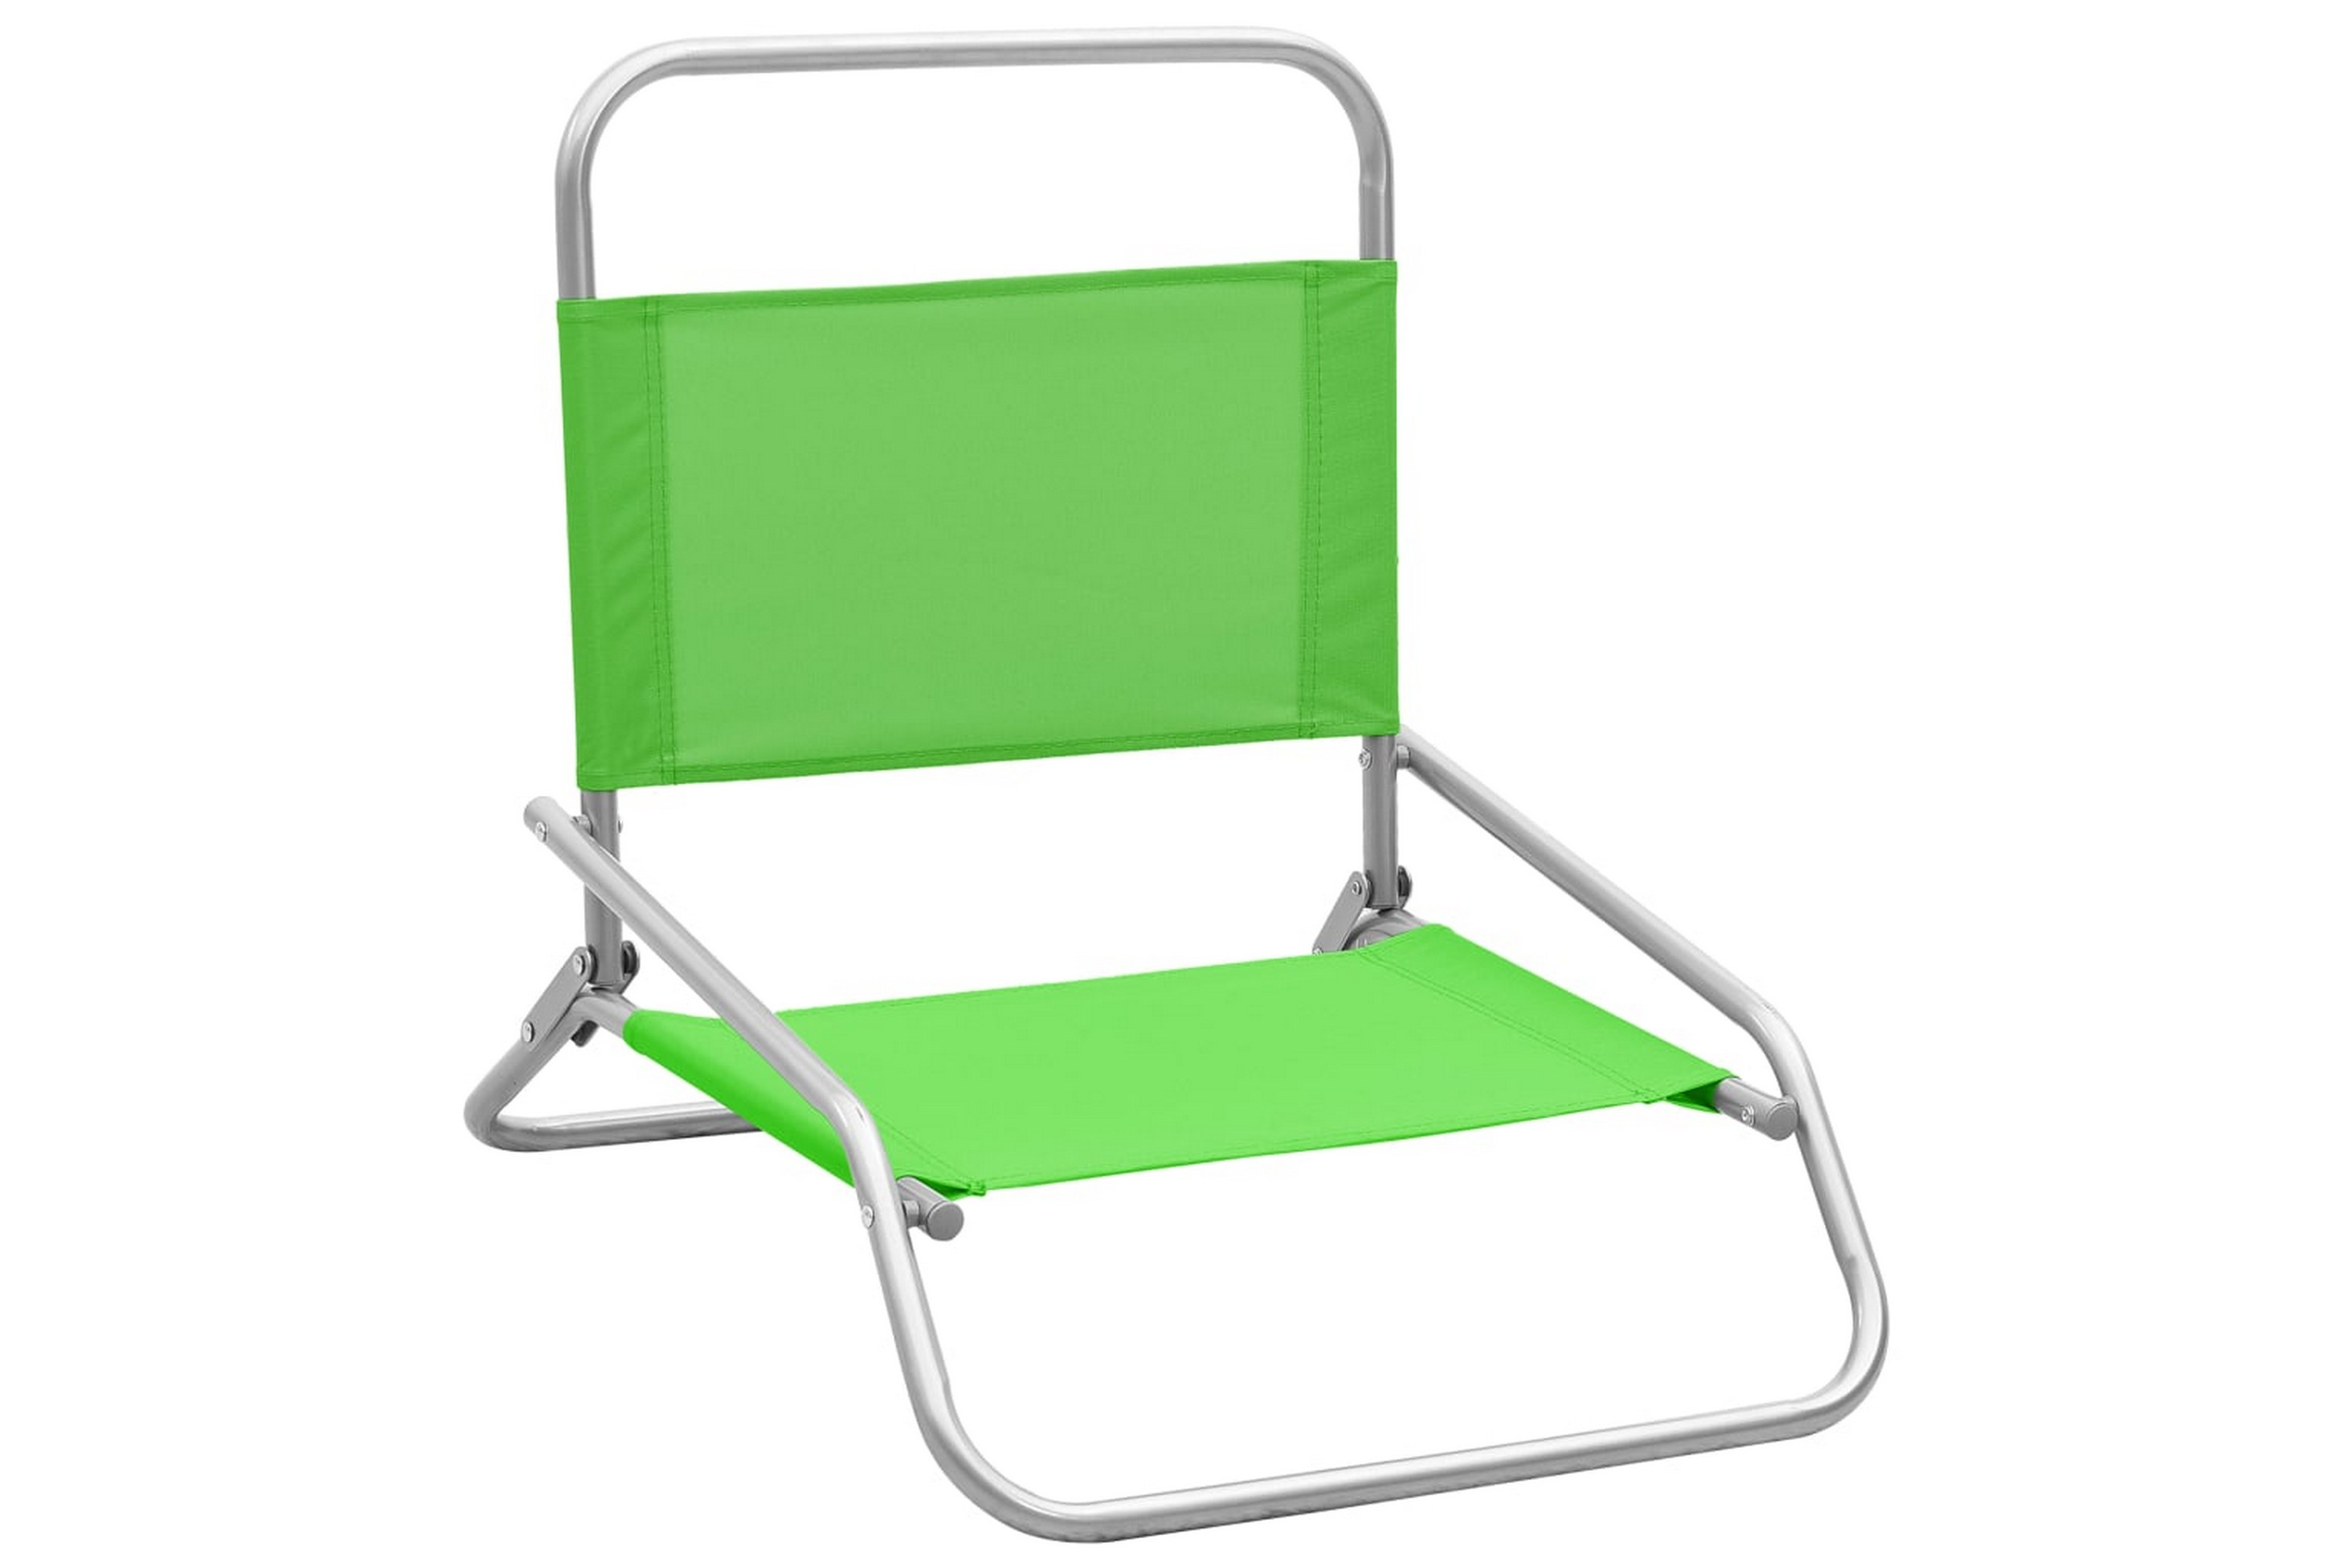 Be Basic Sammenleggbare strandstoler 2 stk grønn stoff - Grønn